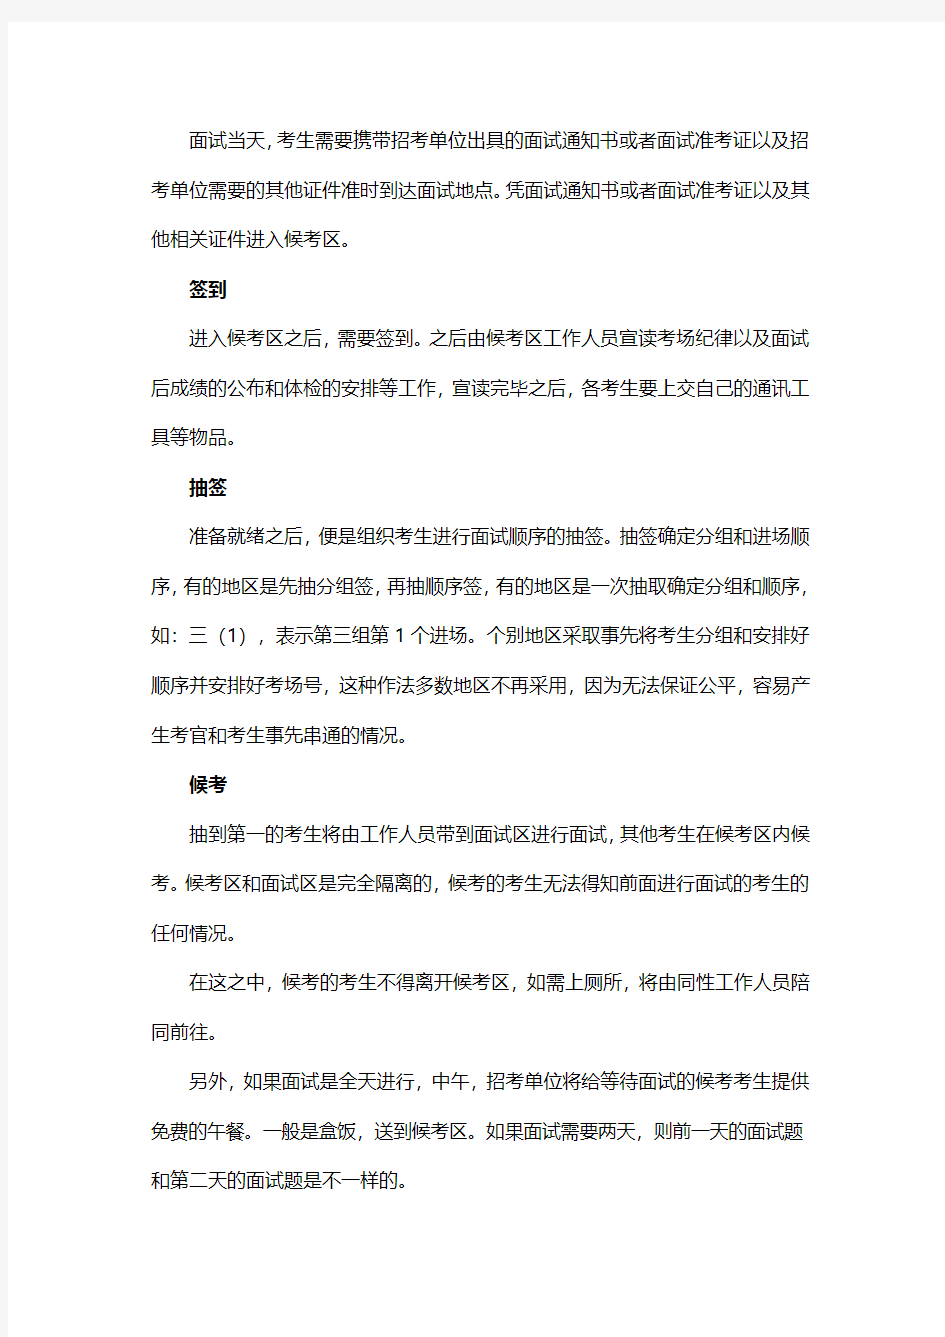 2014年秋季福建省公务员考试笔试成绩查询入口